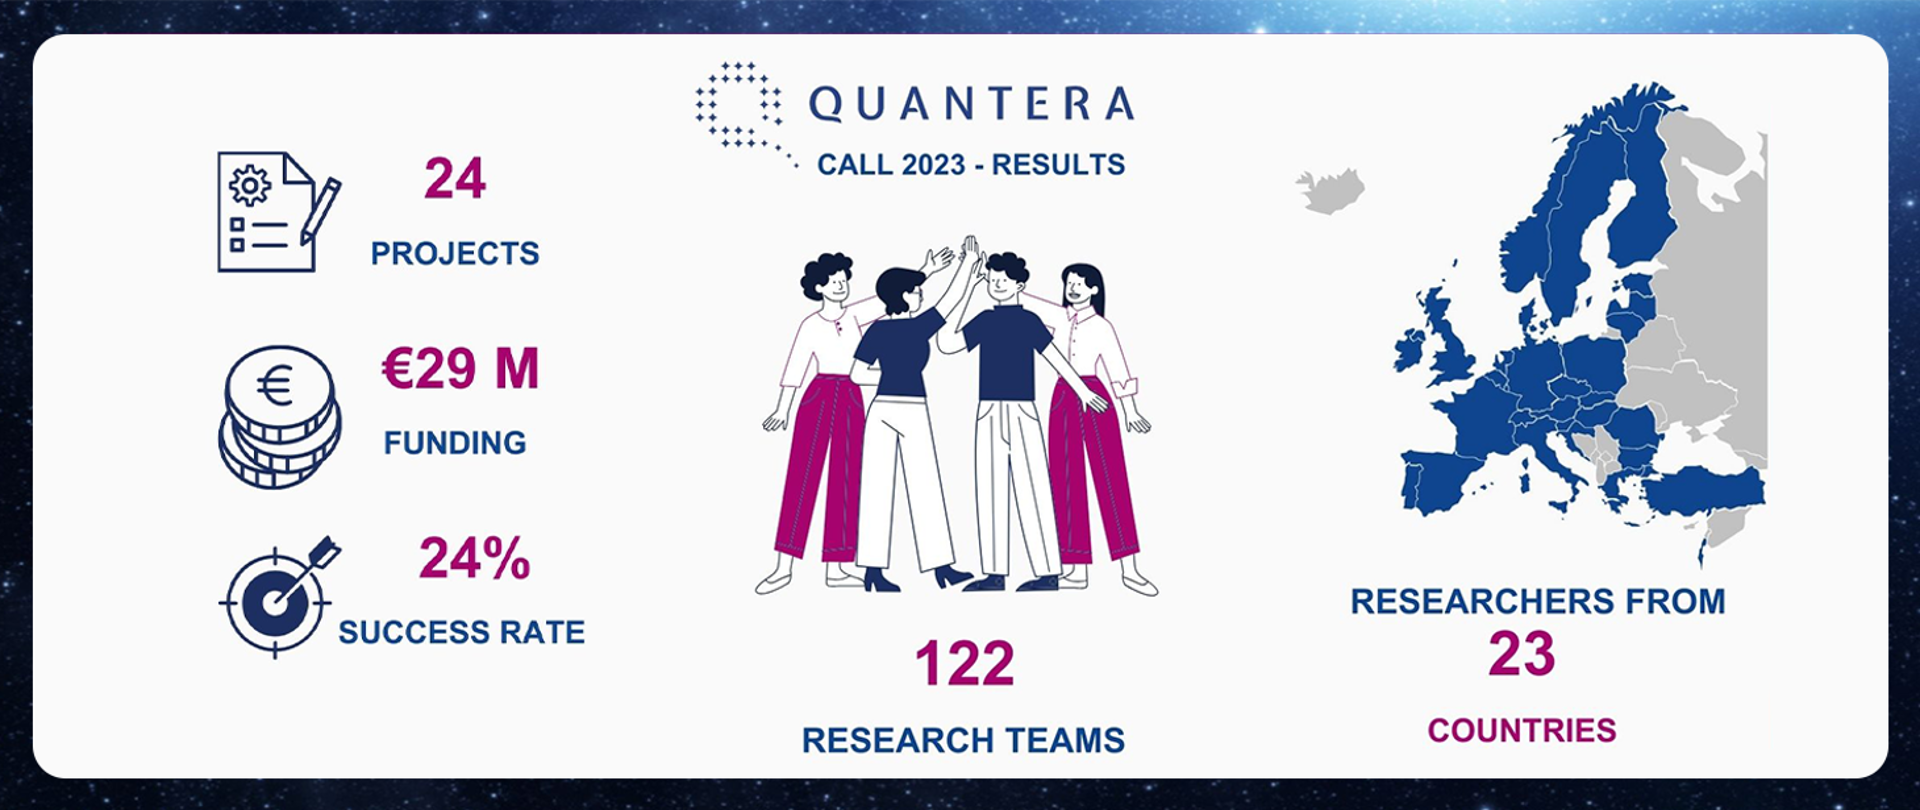 Grafika - na białym tle napis Quantera, schematyczna mapa Europy i ikonki z podpisami - 24 projects, 29N euro funding, 24% success rate, 122 research teams.